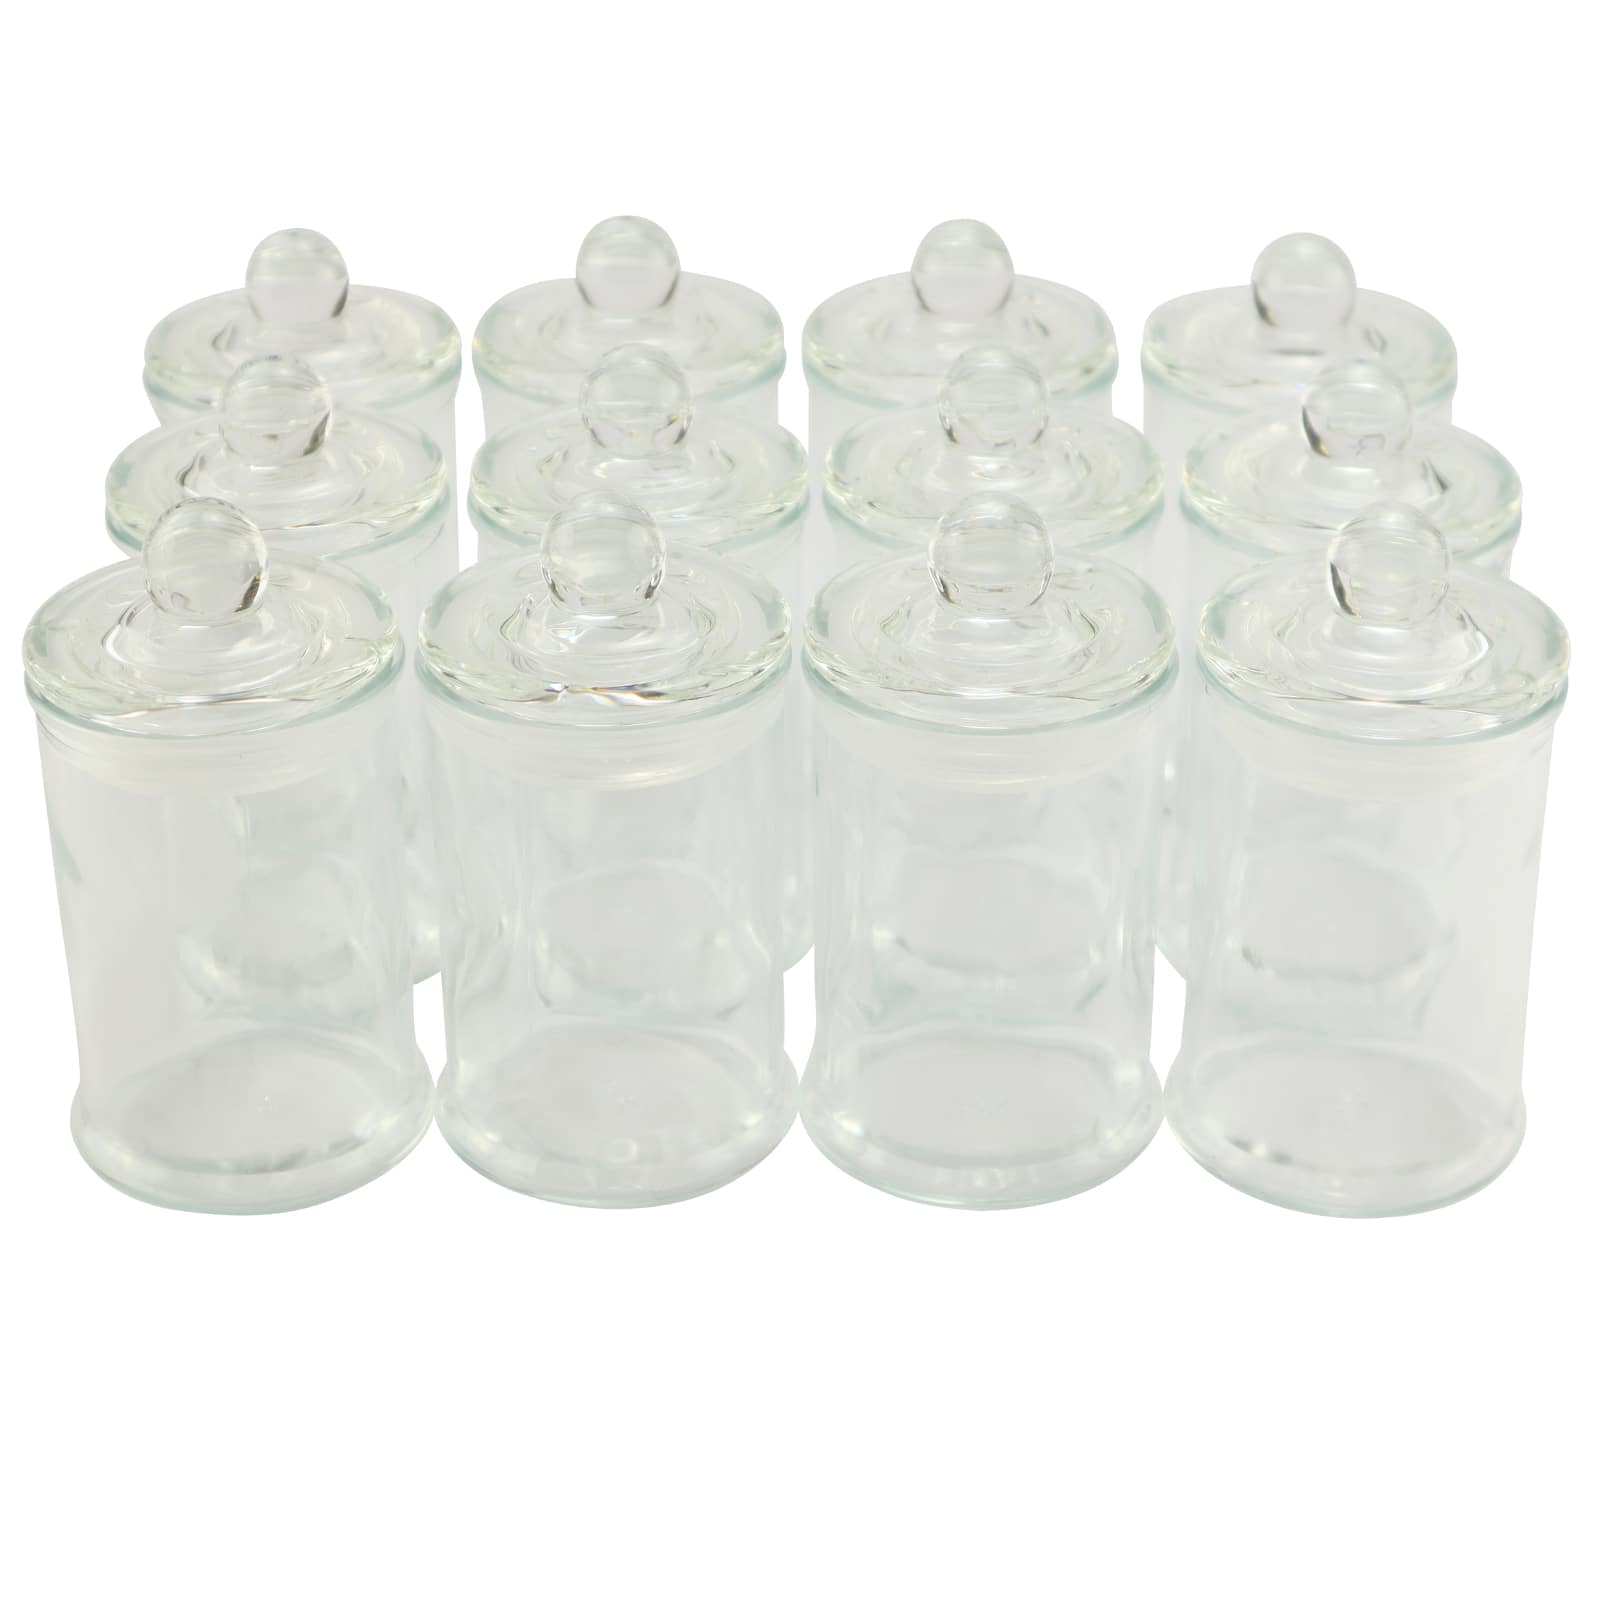 Libbey Vibe Mini Glass Jars with Lids Set, 12 pk - Metro Market